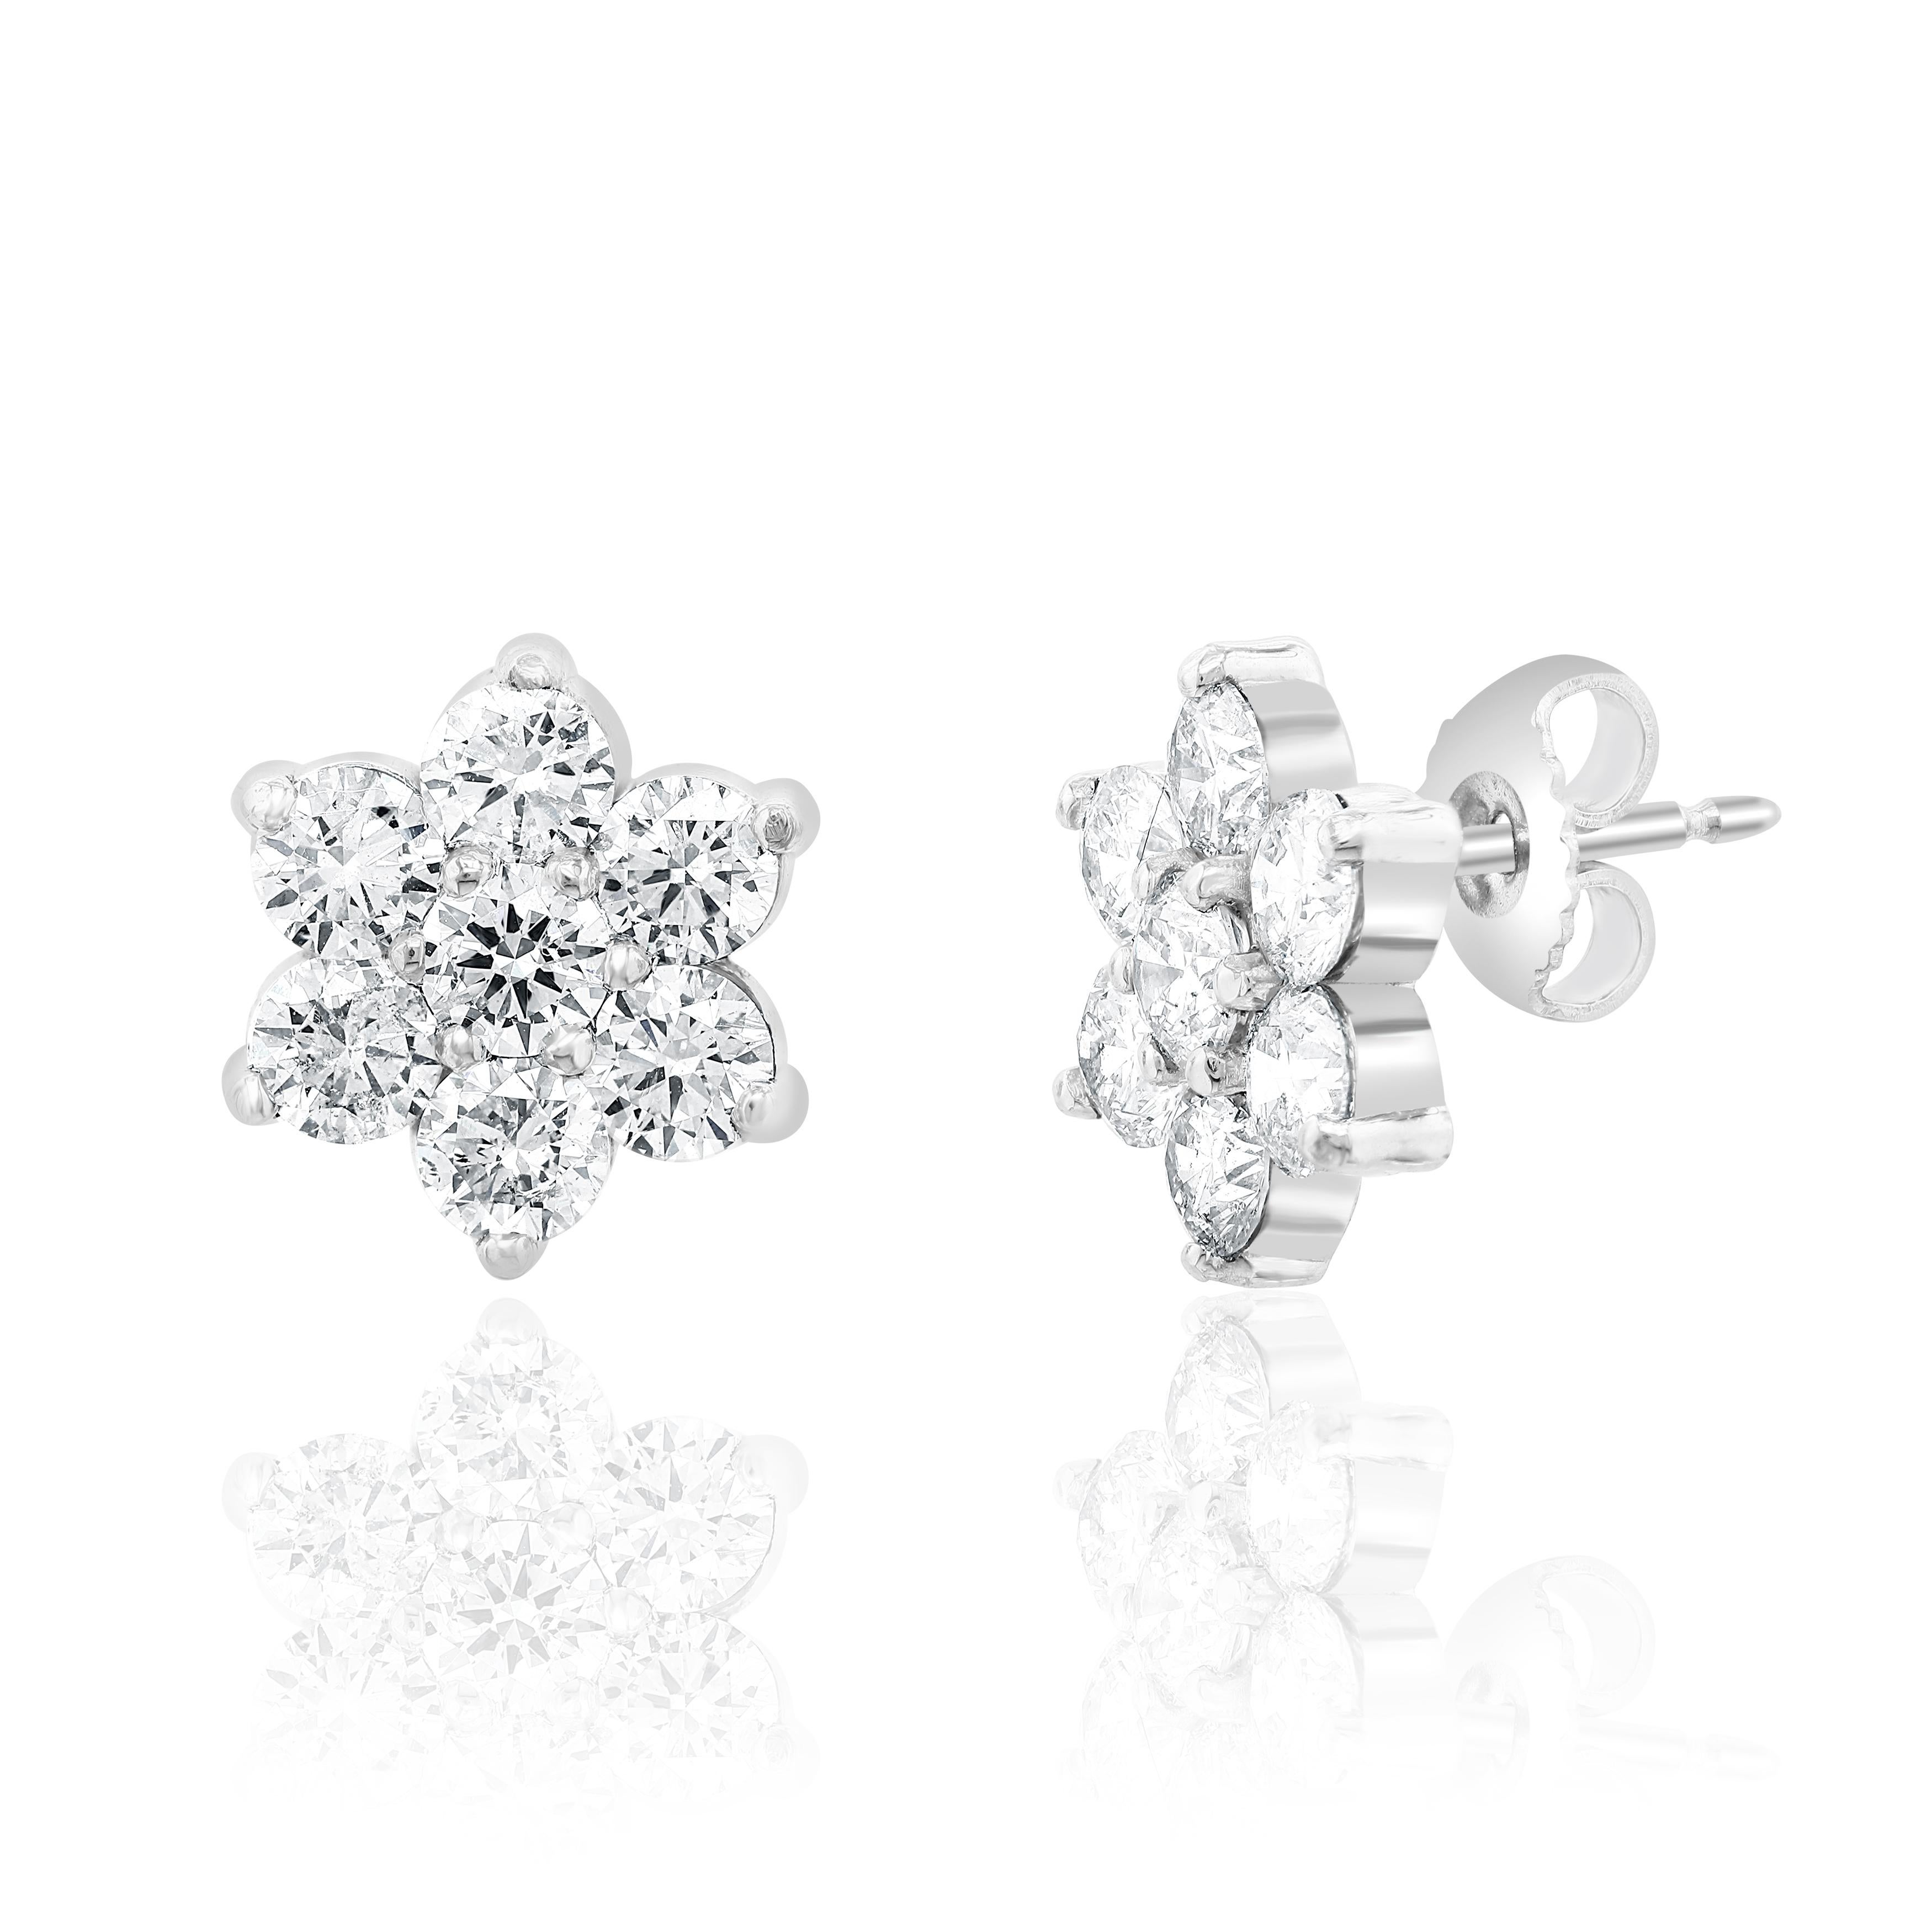 2.boucles d'oreilles en forme de grappe de diamants de 93 carats.

Serti en or blanc 14 carats.
Les diamants sont de couleur H et de pureté SI.
